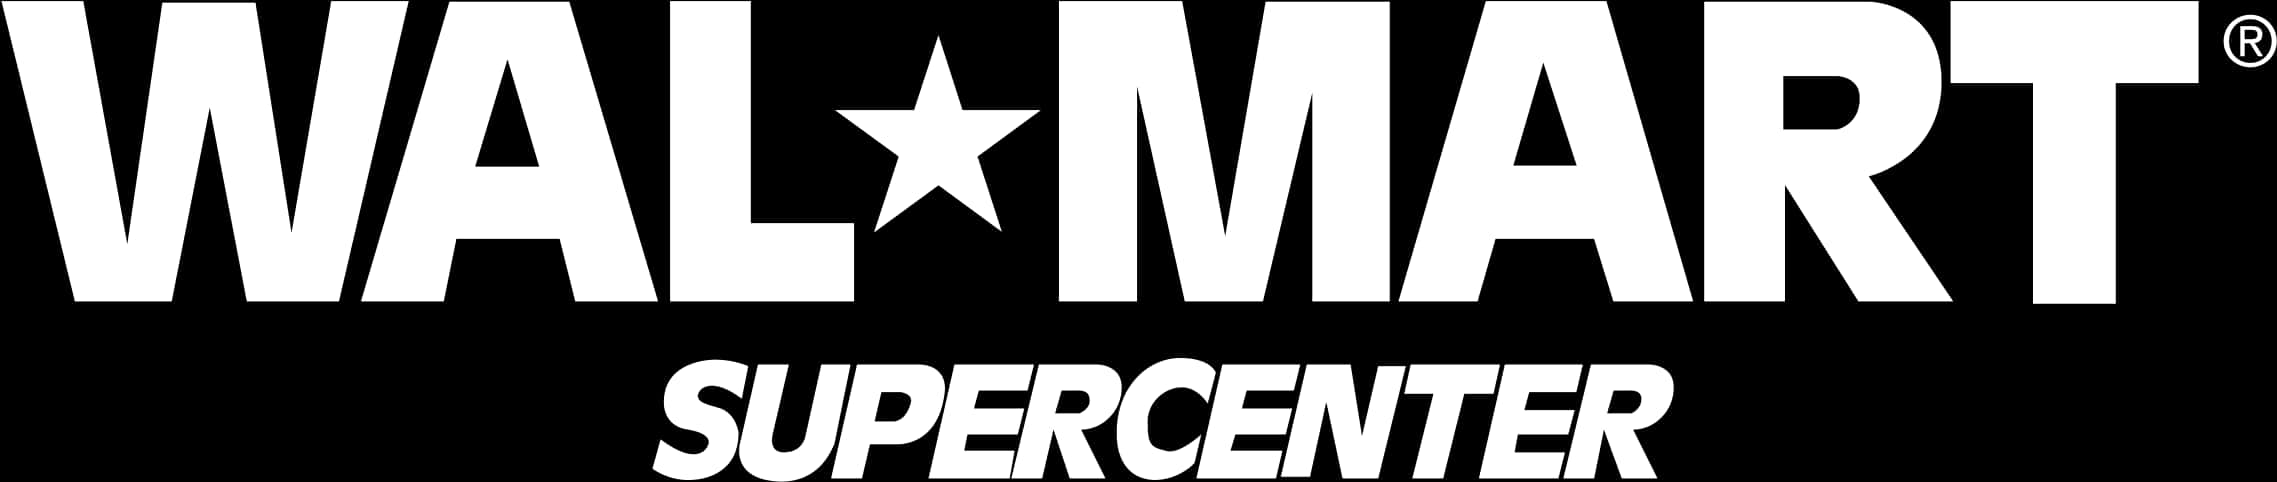 Download Walmart Supercenter Logo | Wallpapers.com